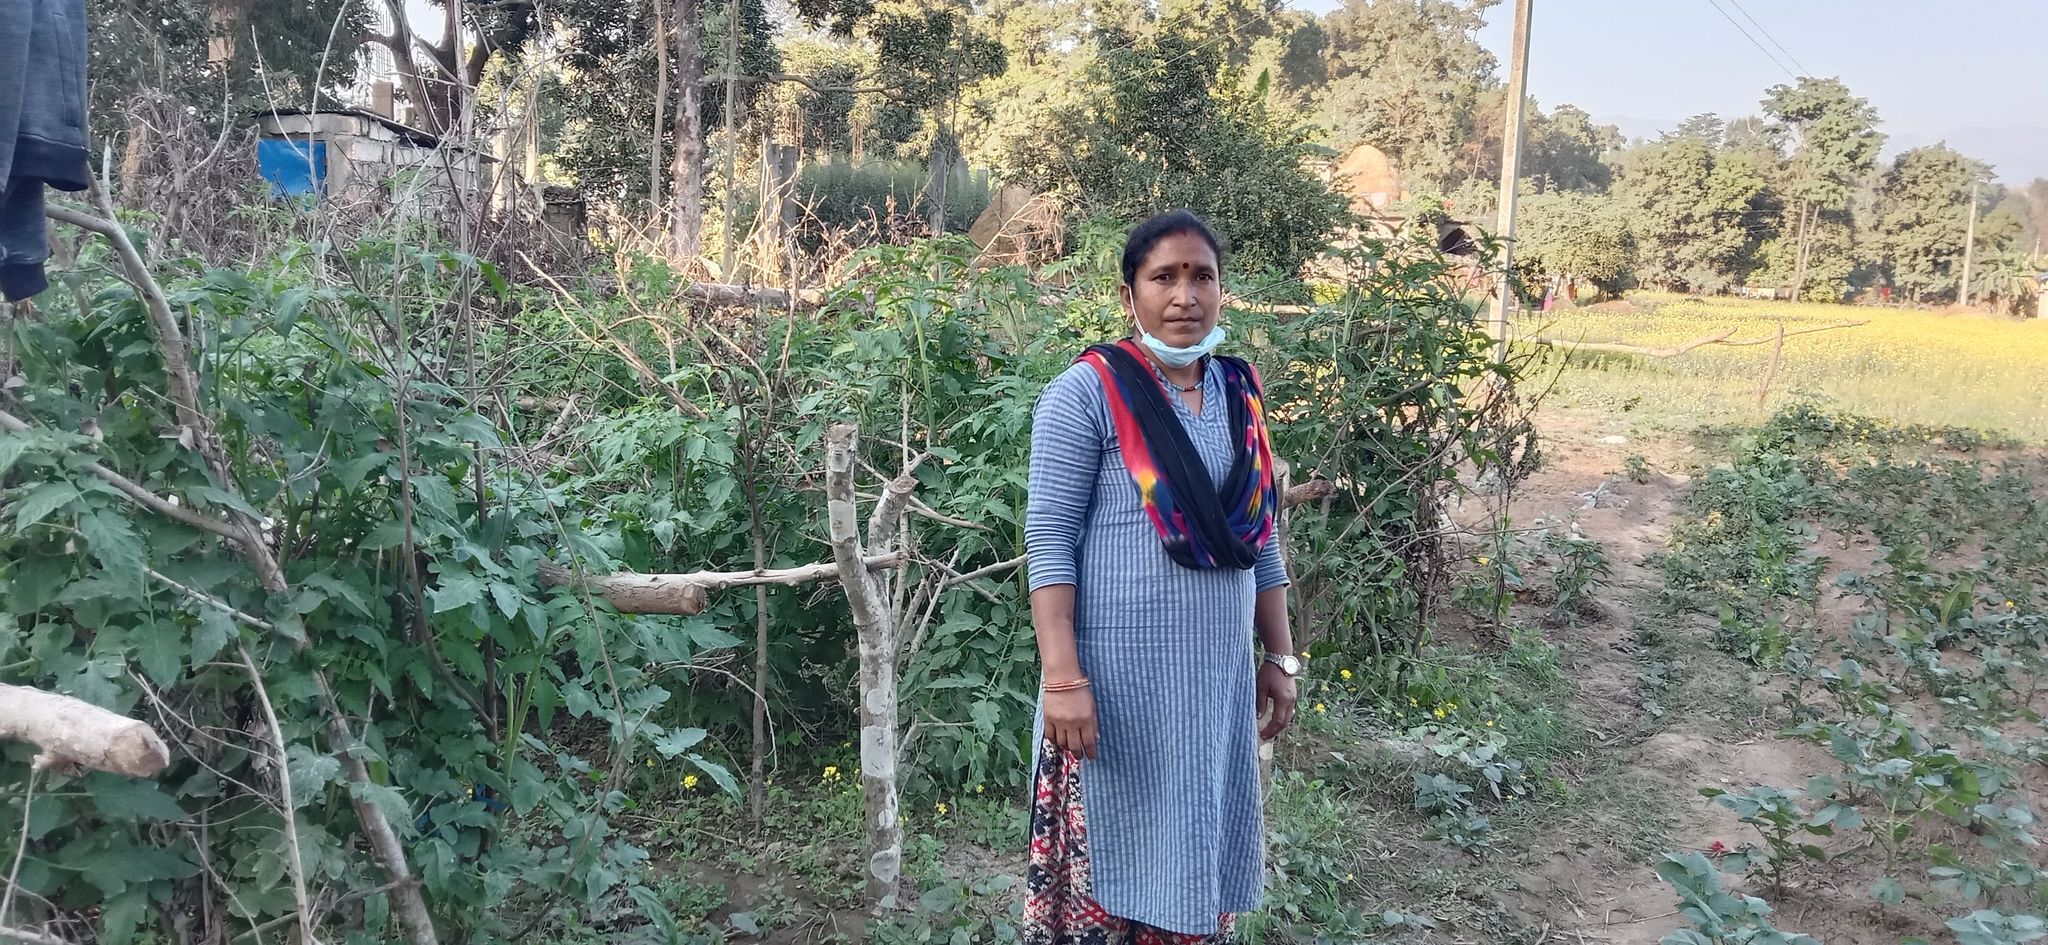 कोरोना कहरले जुराएको अवसर : भारतबाट फर्केर स्वदेशमा व्यवसायिक तरकारी खेती